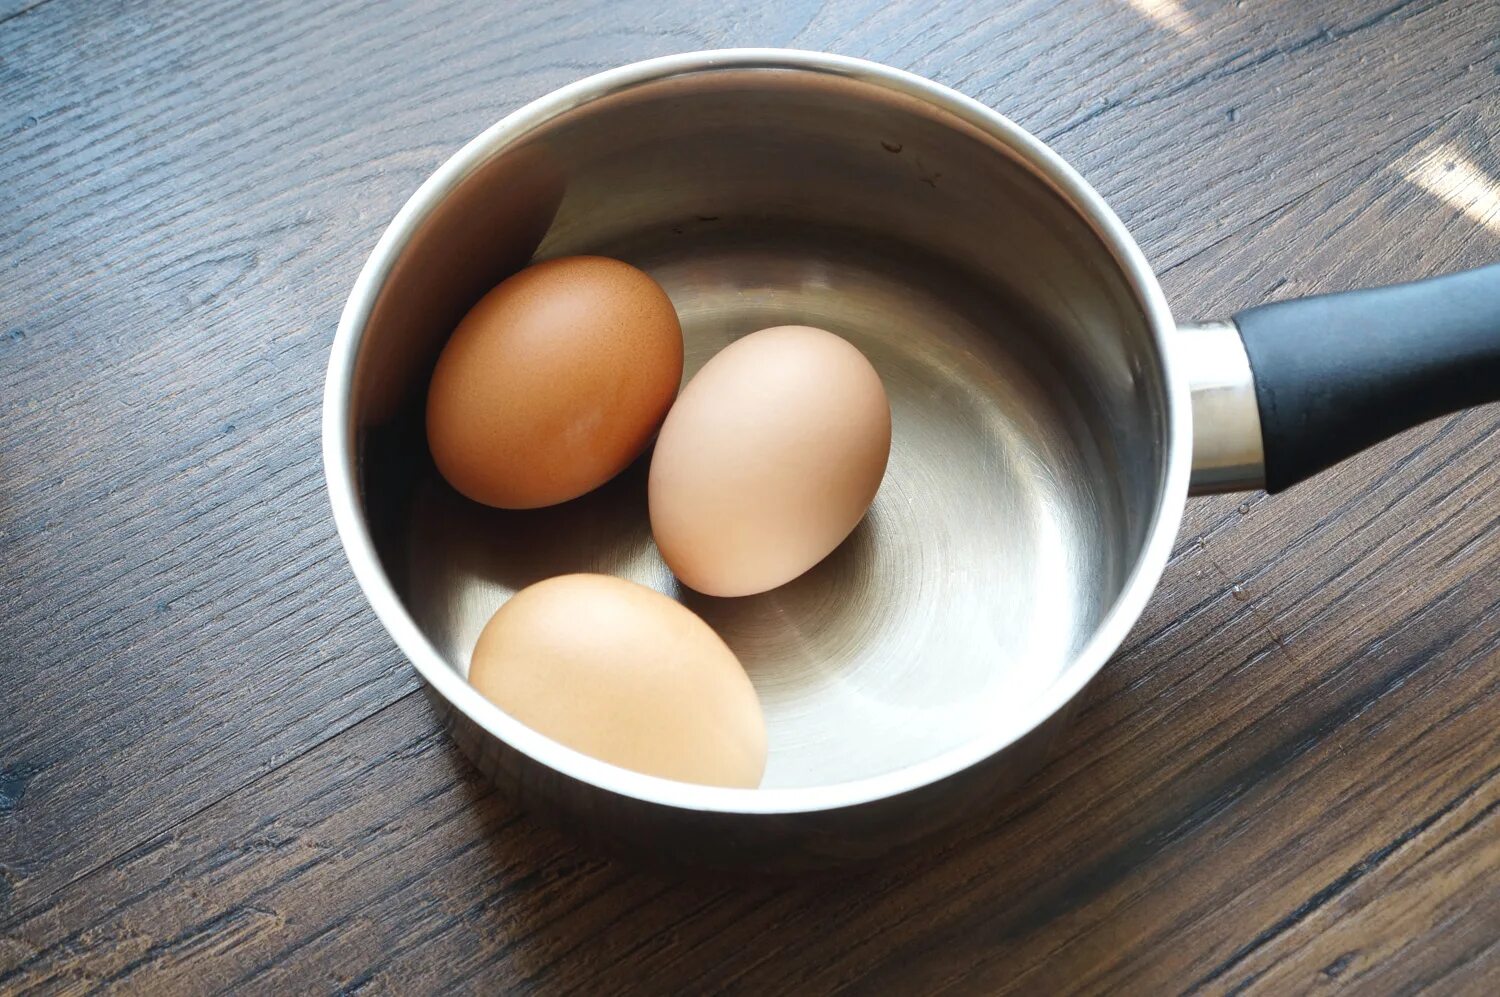 Видео вареные яички. Яйца в кастрюле. Вареные яйца. Яйцо отварное. Отварка яиц.